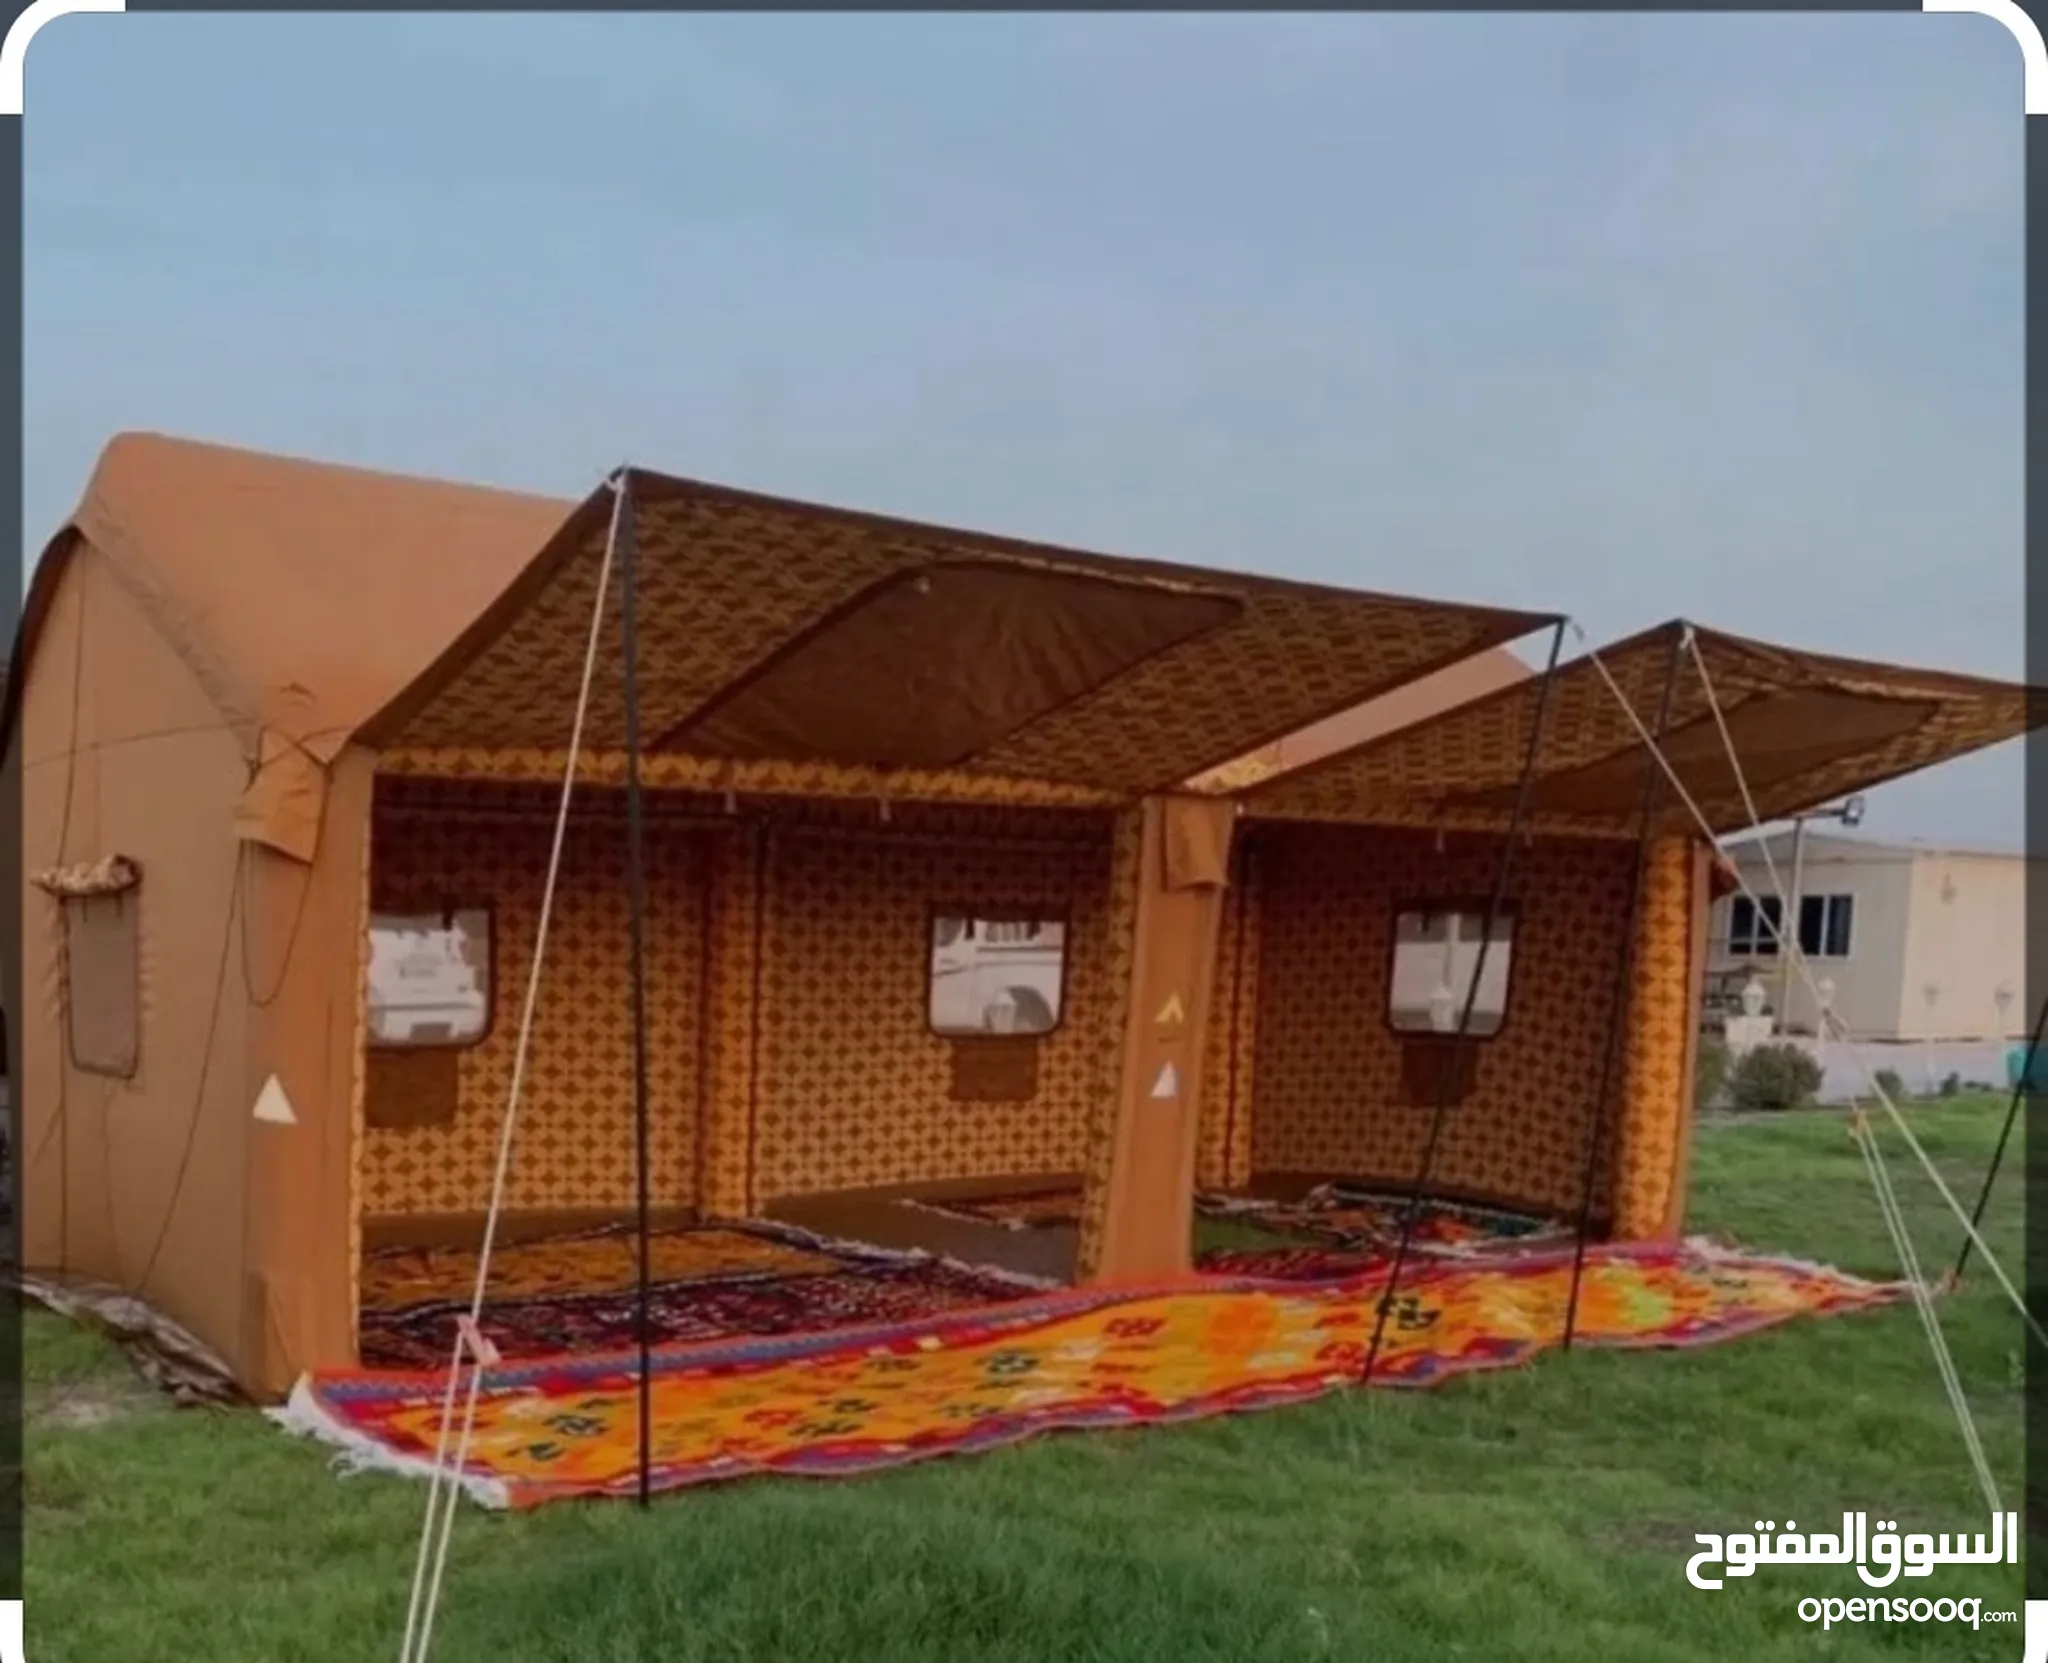 خيام للبيع بسعر رخيص - لوازم تخييم في عُمان : خيمة صغيرة للبيع | السوق  المفتوح